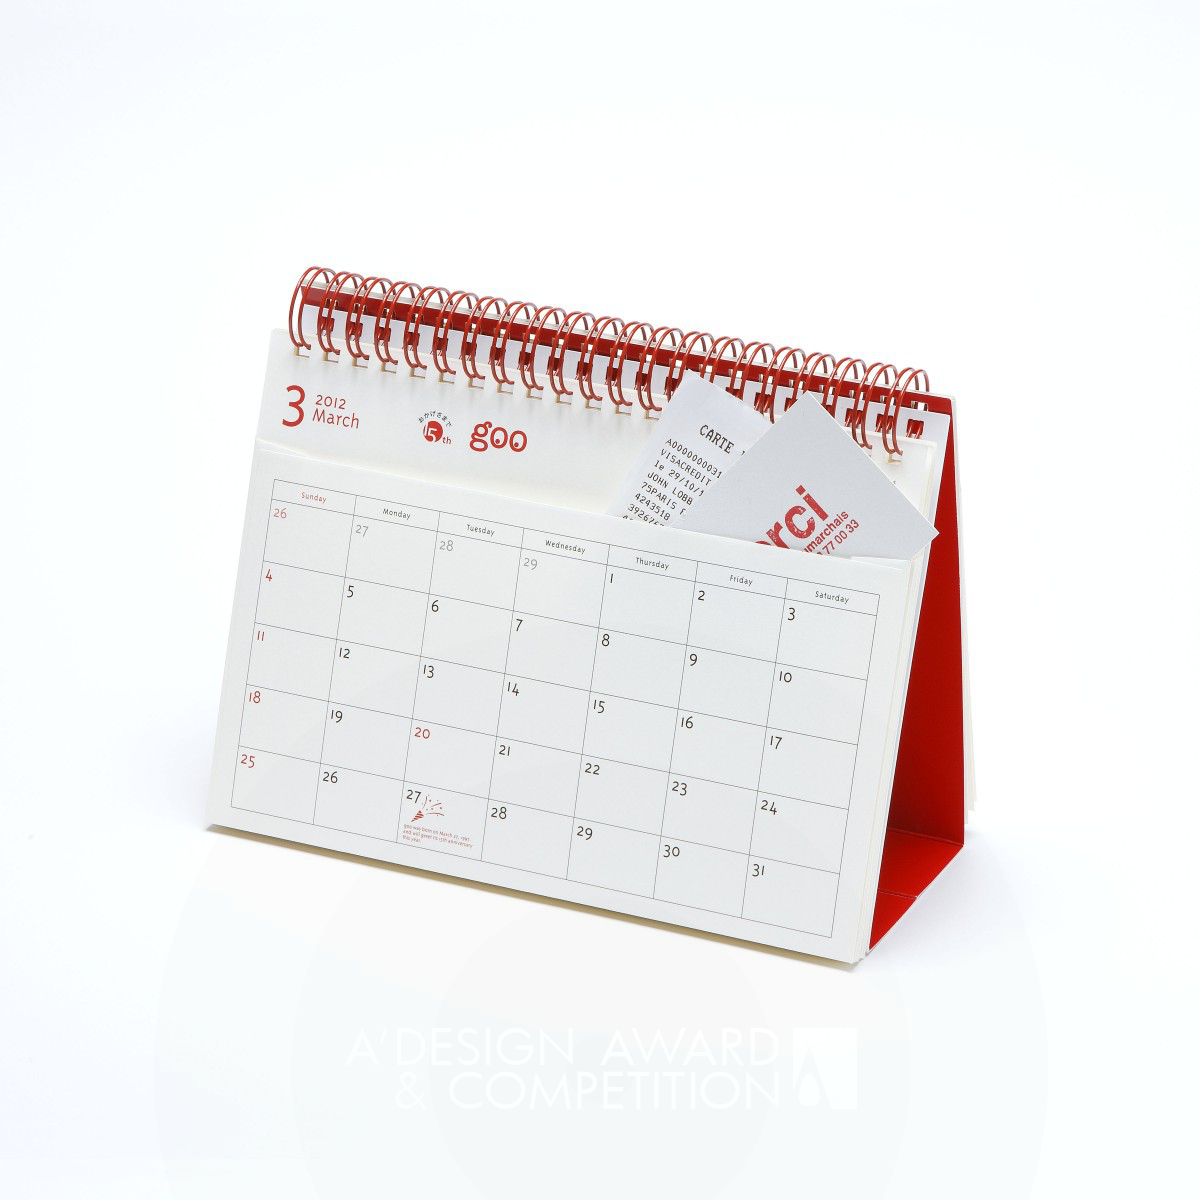 goo calendar for your own "12 Pockets" Calendar by Katsumi Tamura